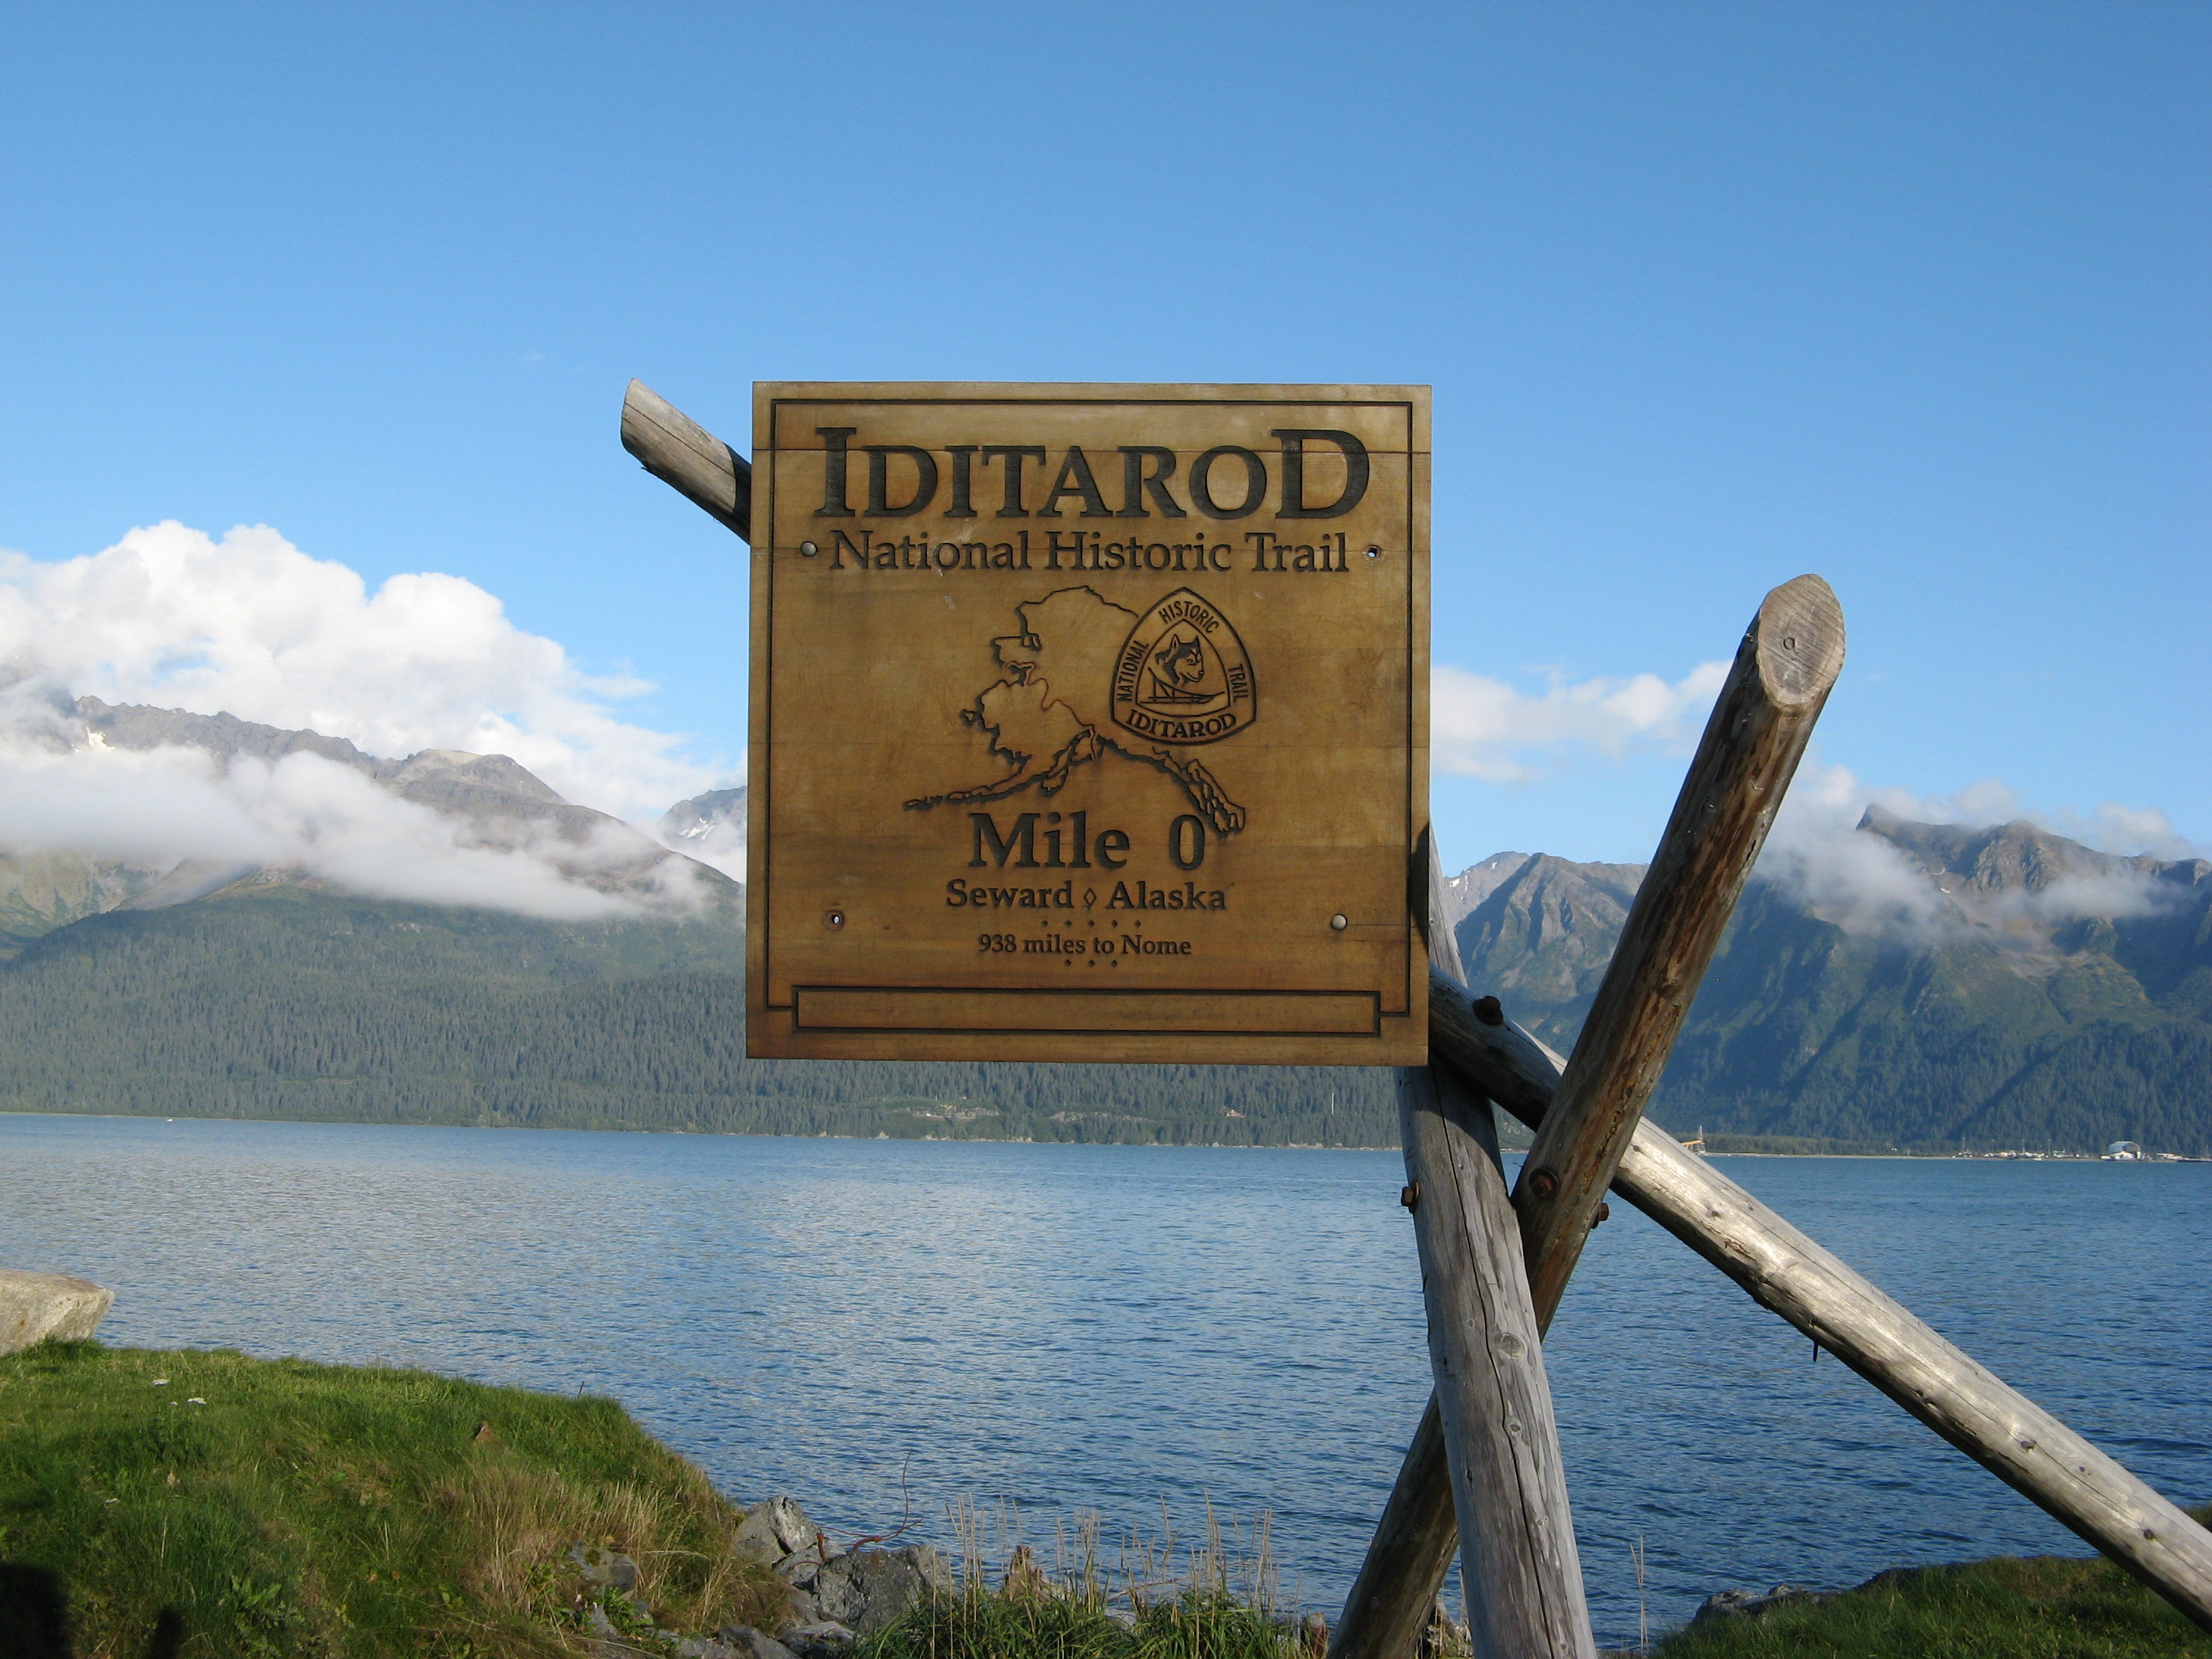 Iditarod Trail sign in Seward, Alaska.